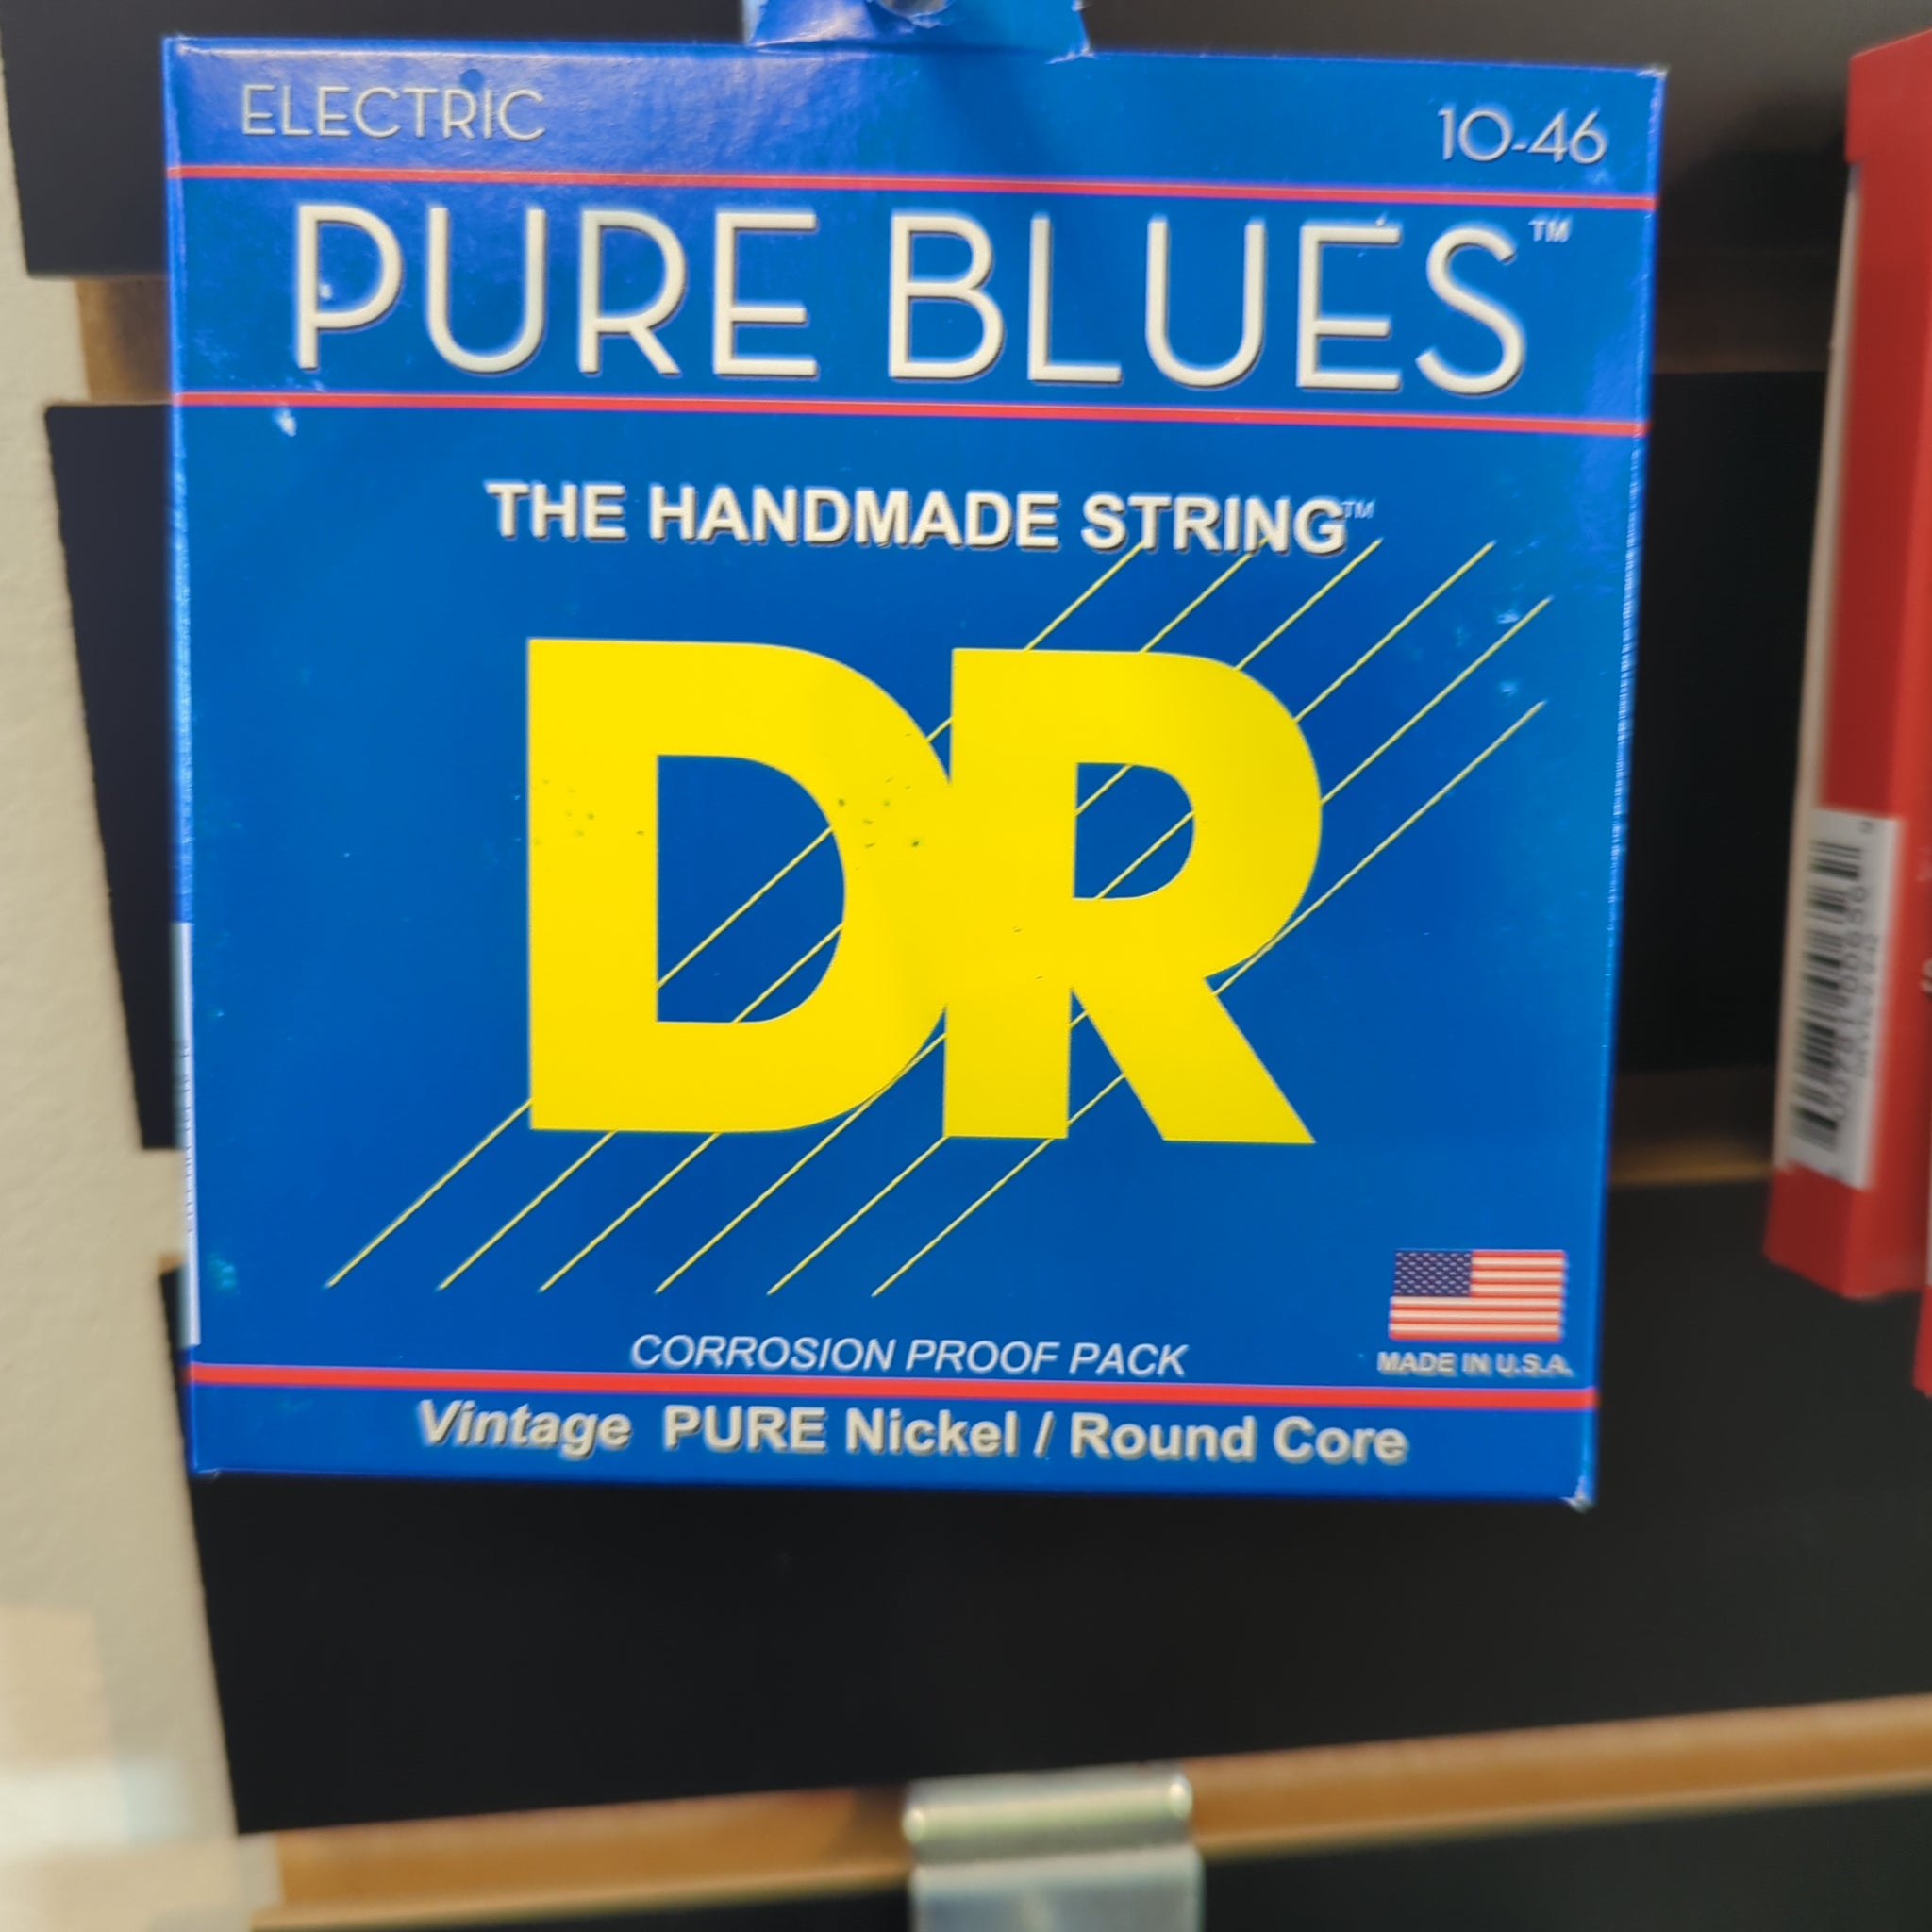 DR Pure Blues